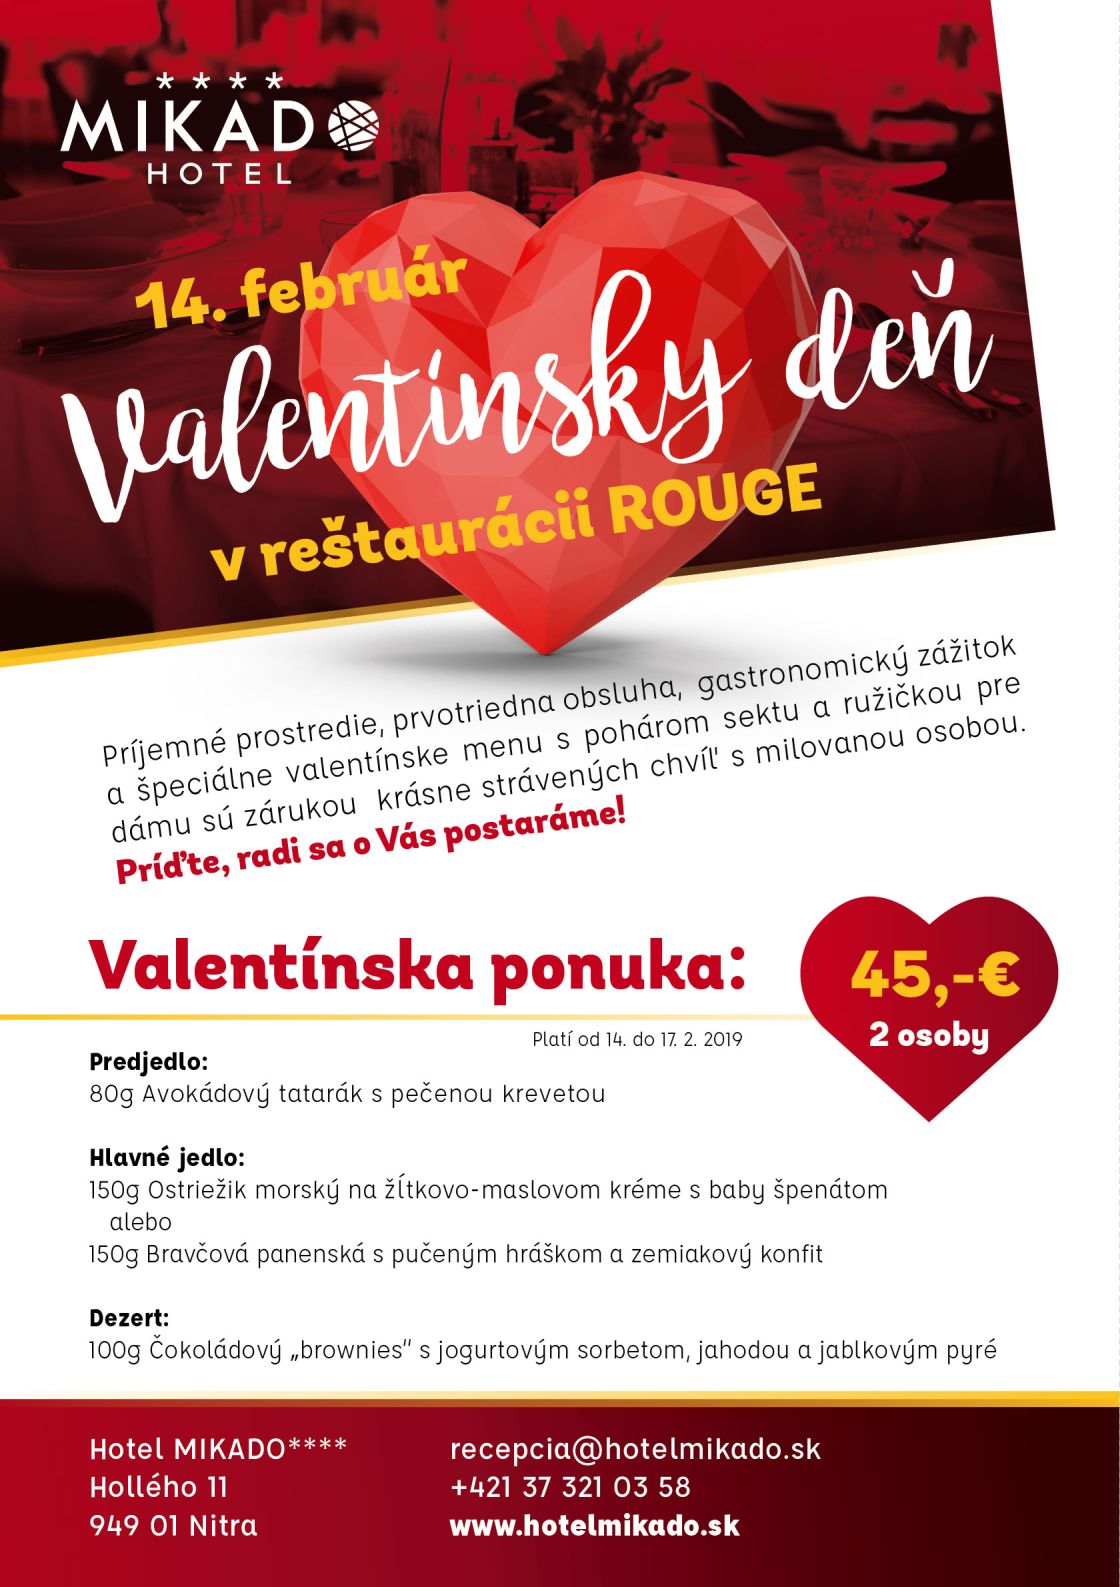 Valentín v hoteli MIKADO - romantická večera pre dvoch reštaurácia Rouge - 14. februára 2019